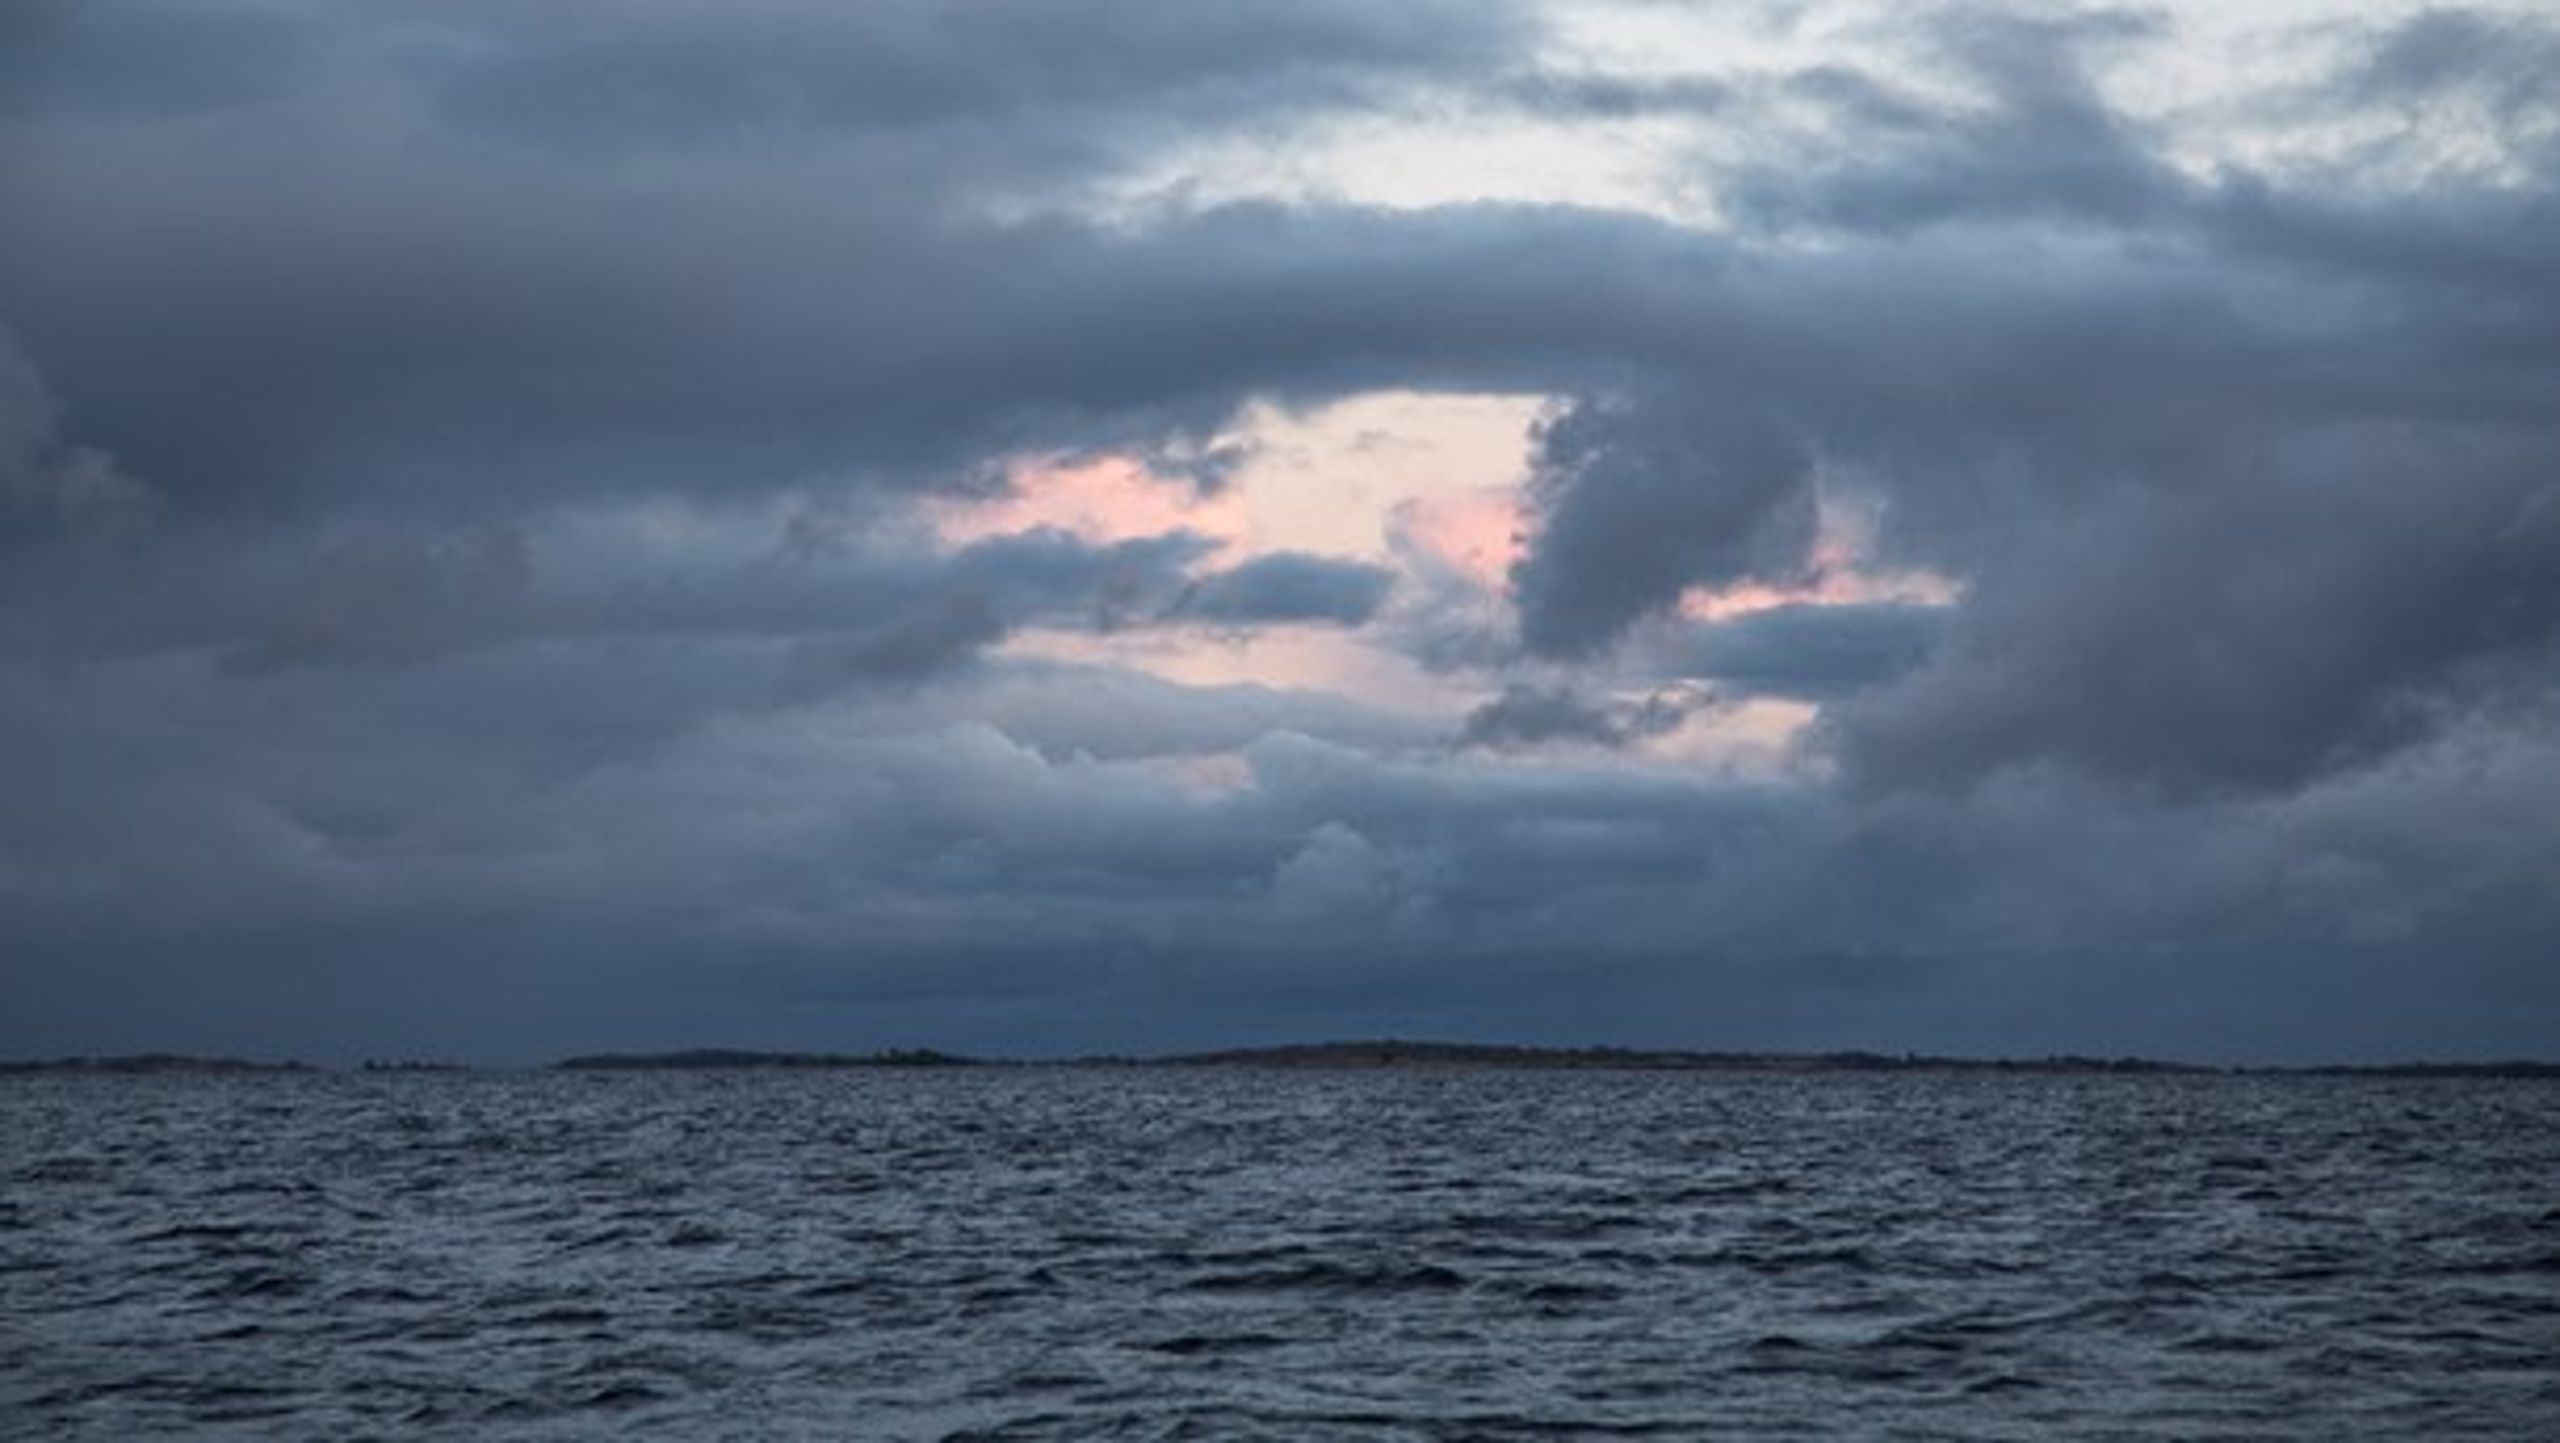 Den 29 maj kom ICES med vetenskapliga råd inför kommande års fiske i Östersjön. Läget är fortfarande utmanande och råden liknar de inför 2020, skriver debattörerna.&nbsp;